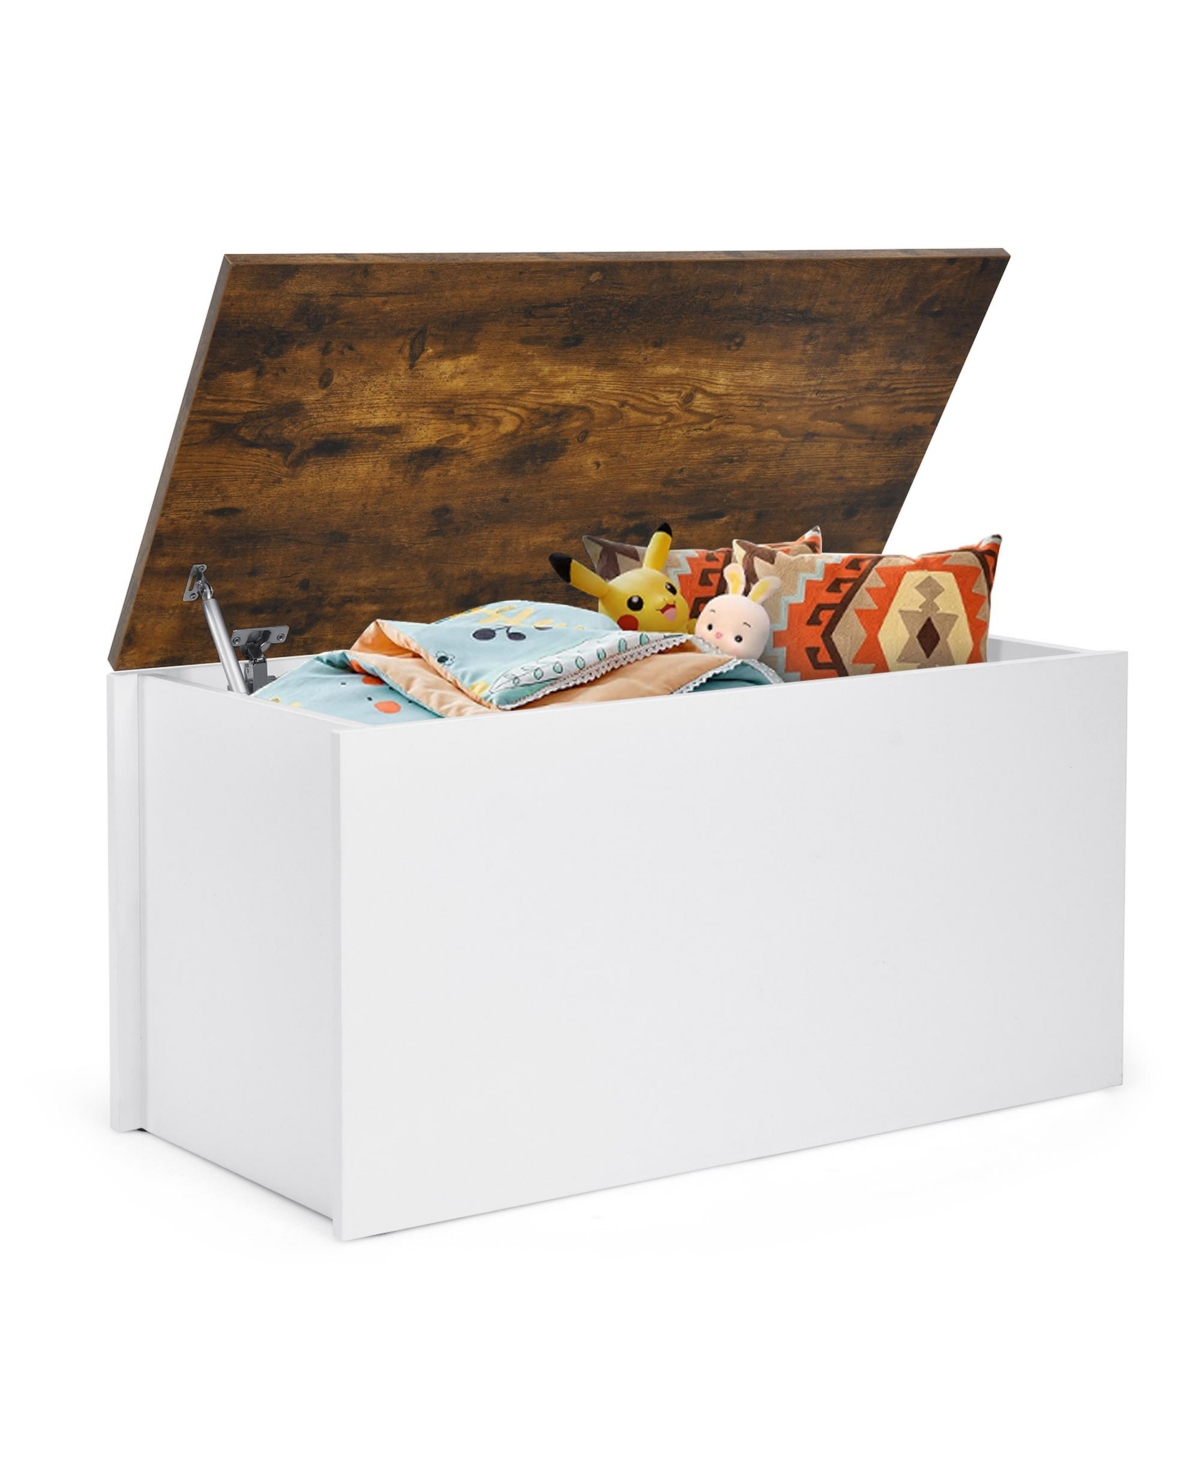 Flip-top Storage Chest Lift Top Storage Bench Wooden Deck Box Toy Box - White